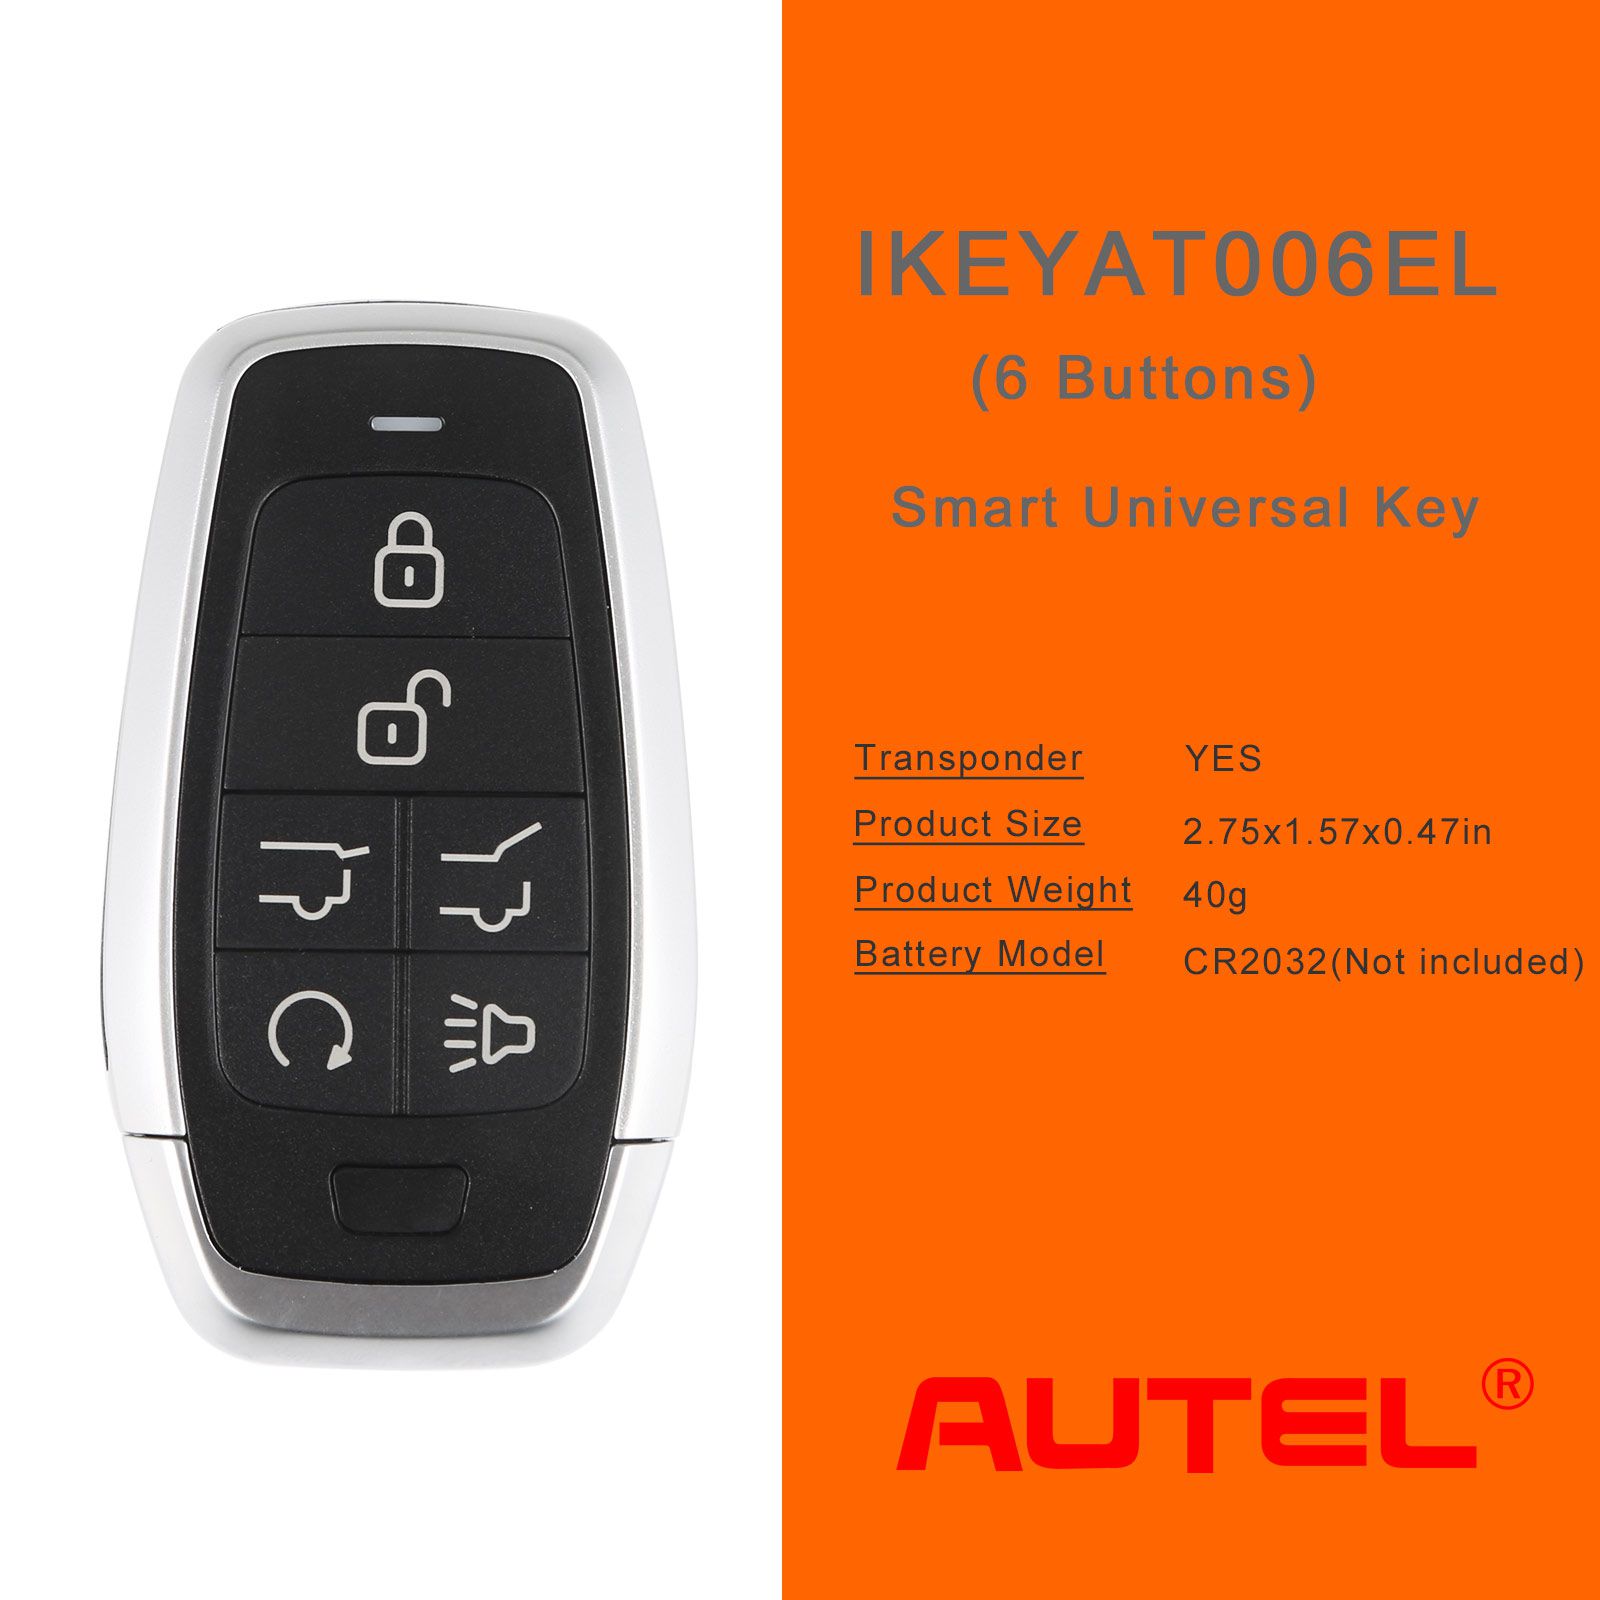 Autel ikeyat006el 6 botones clave inteligente universal independiente 5 piezas / lote